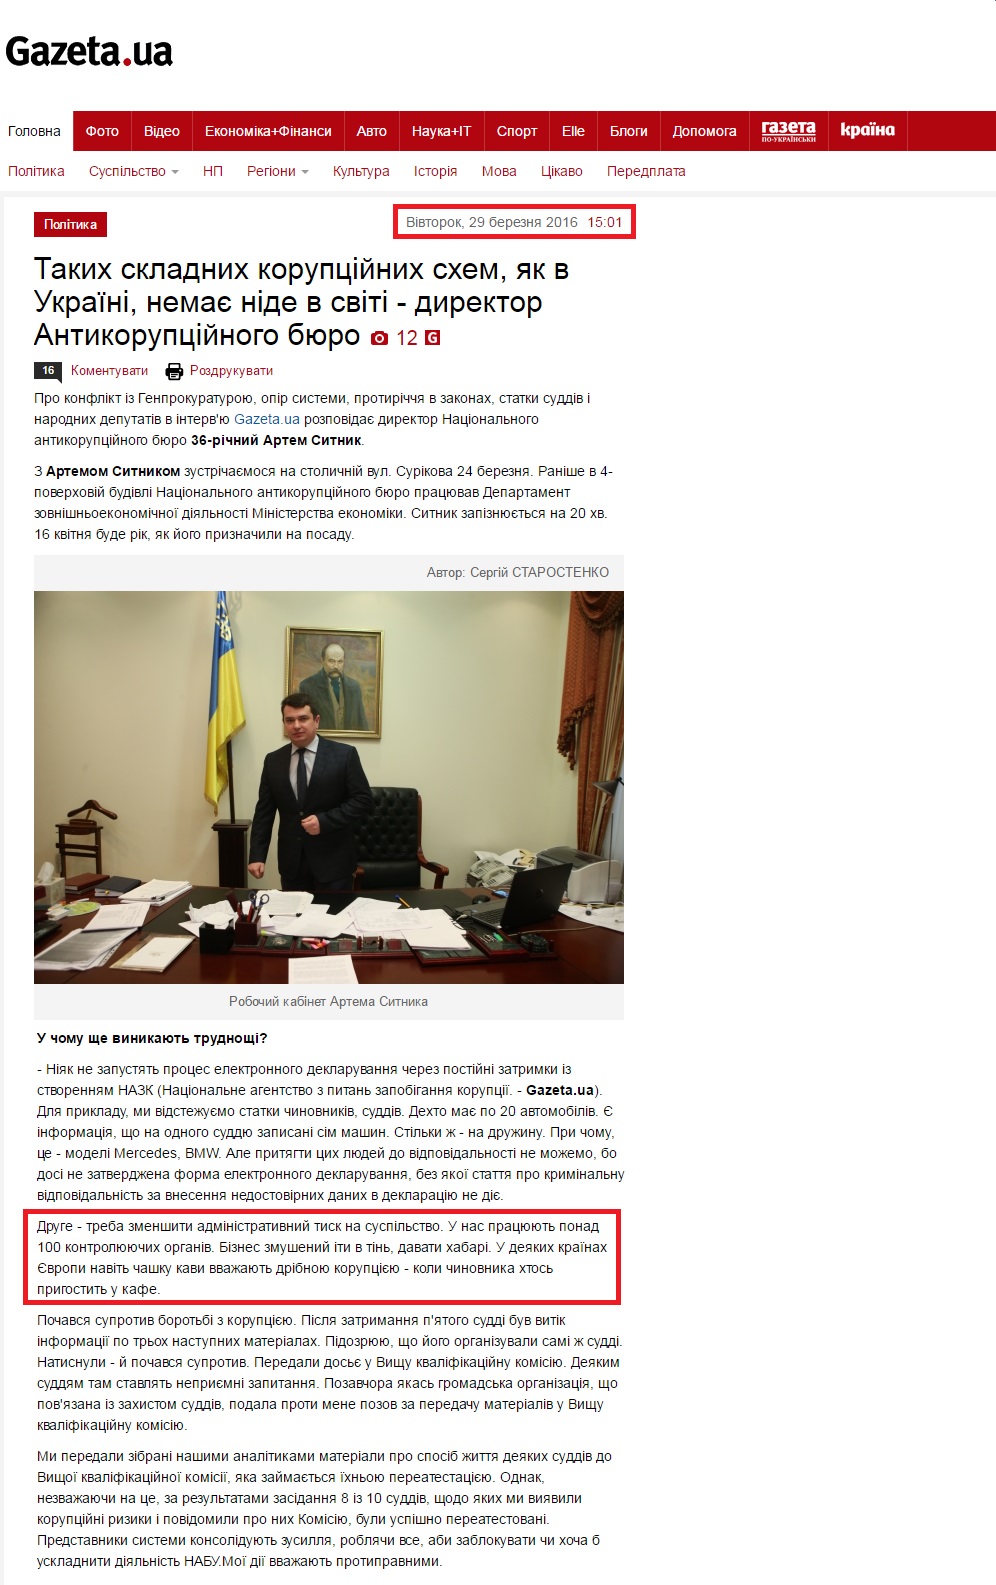 http://gazeta.ua/articles/politics/_takih-skladnih-korupcijnih-shem-yak-v-ukrayini-nemaye-nide-v-sviti-direktor-antikorupcijnogo-byuro/688533